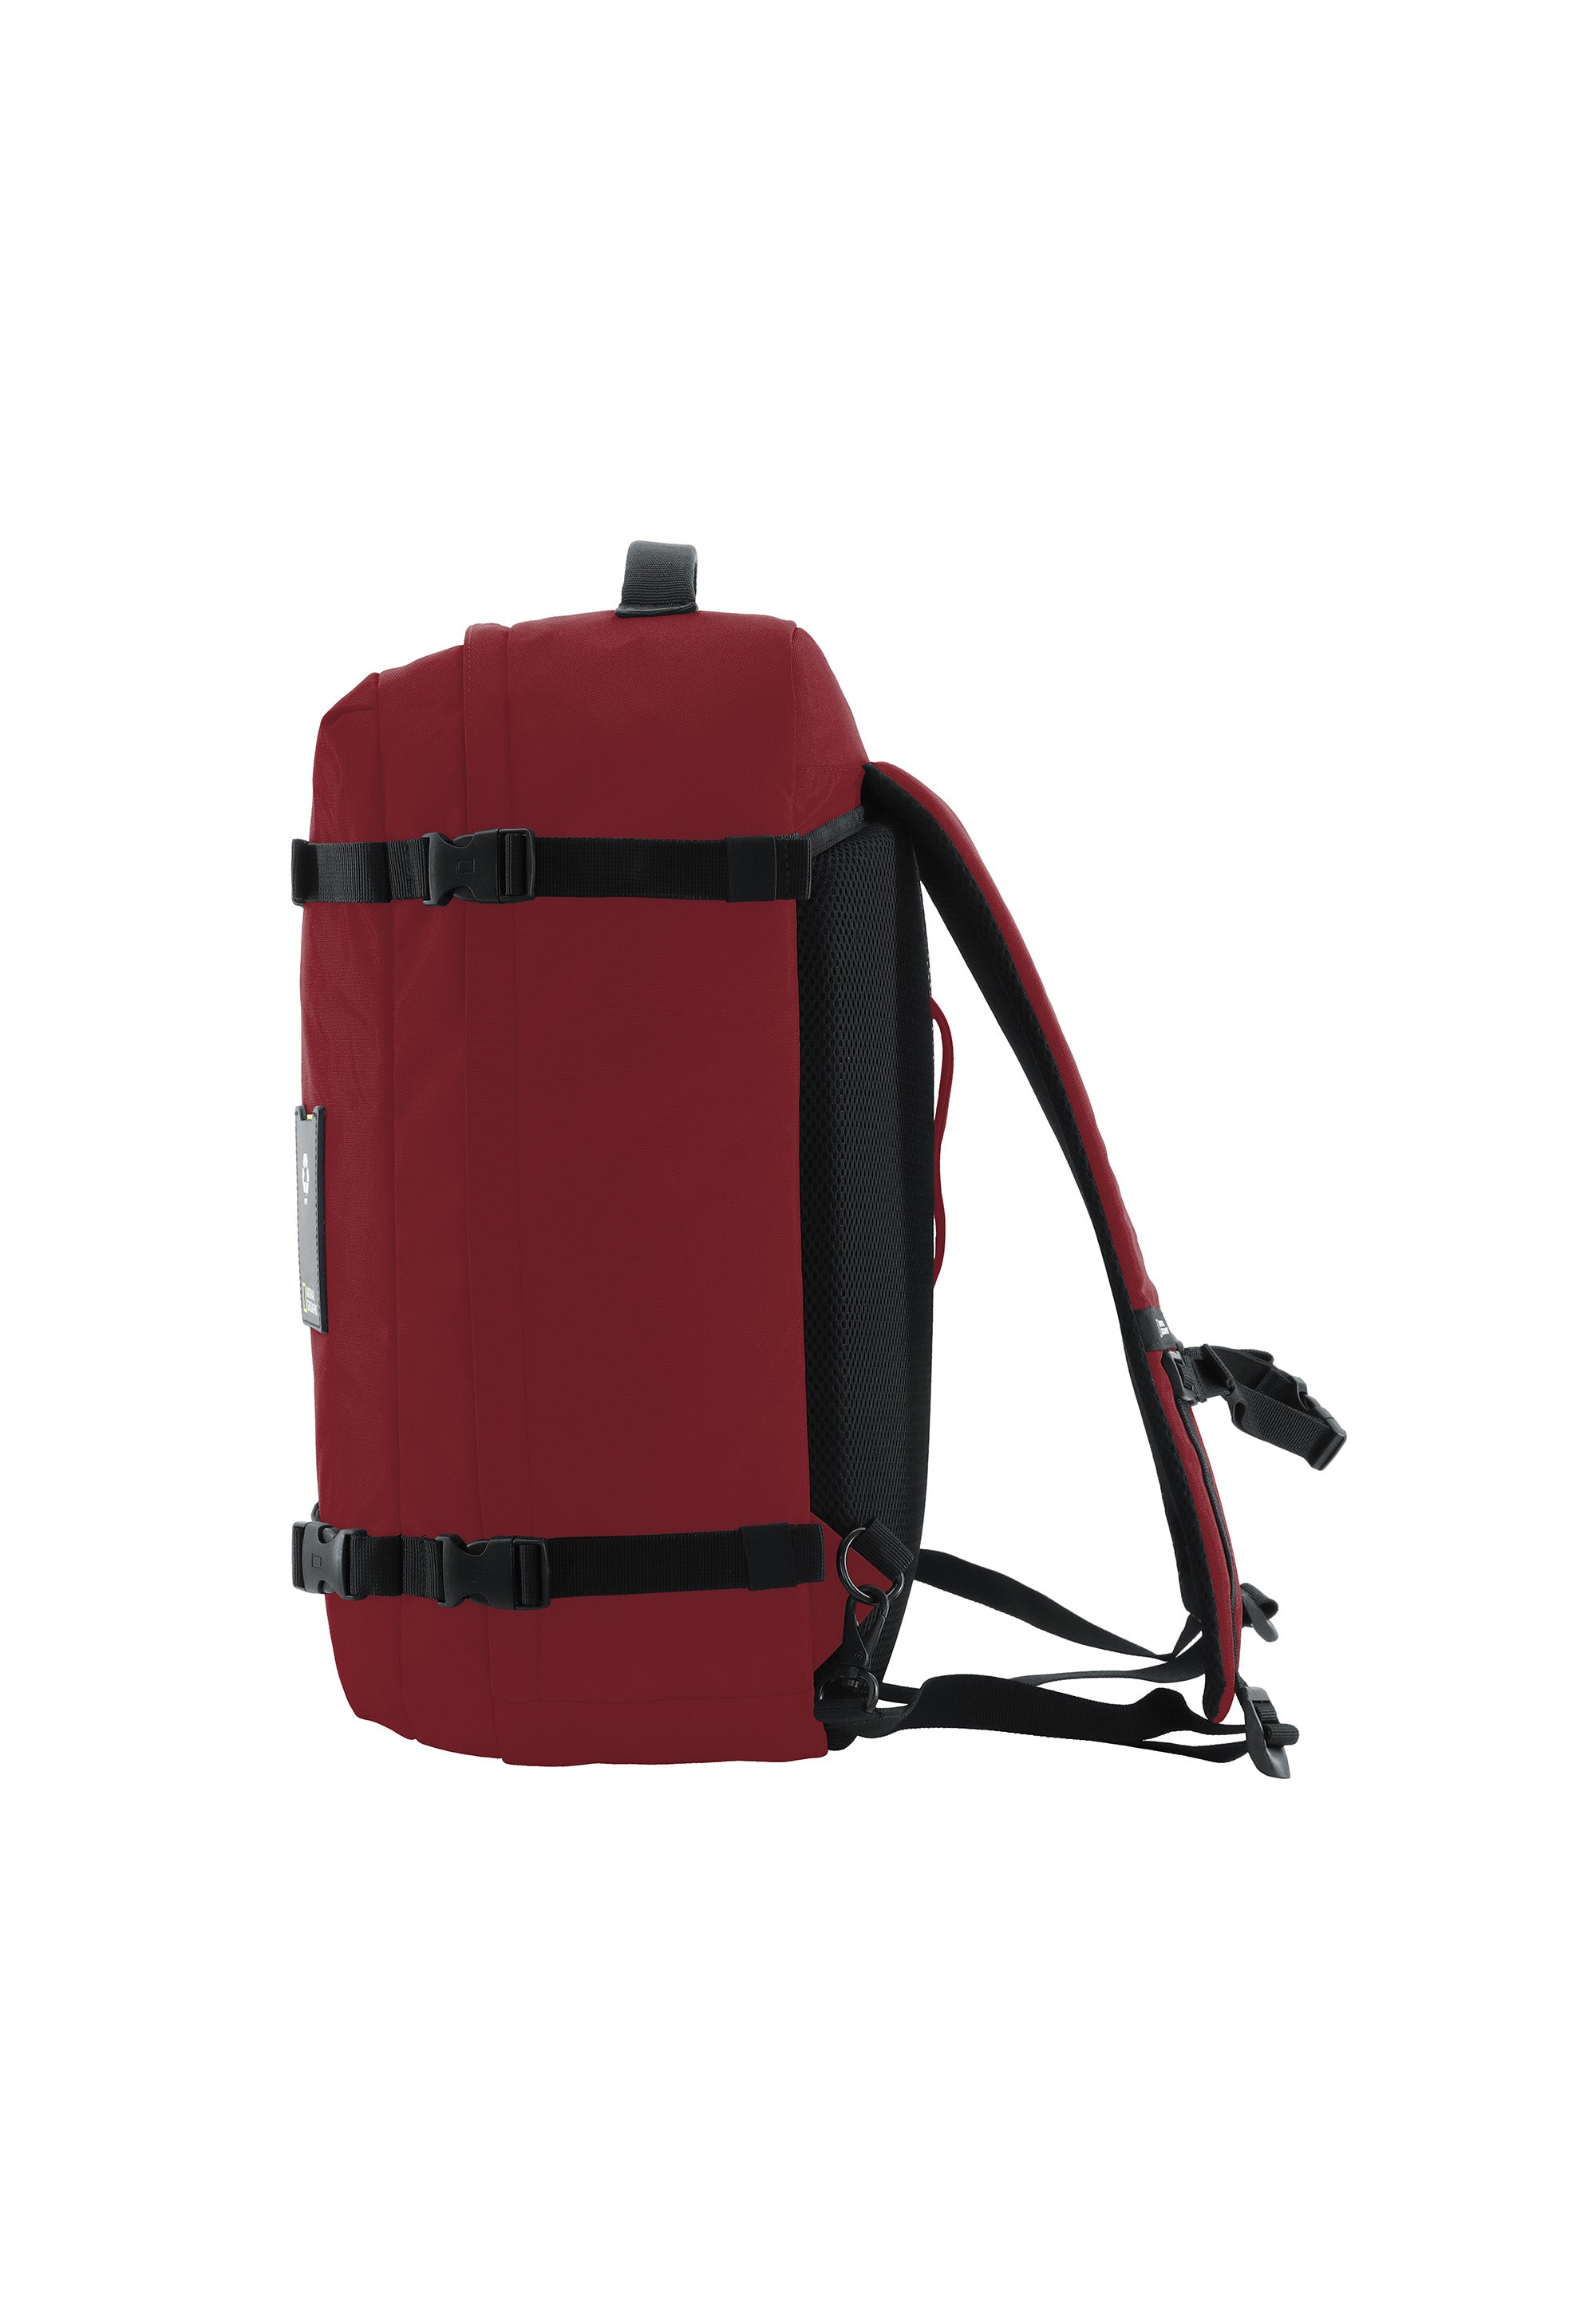 Laptoptasche Rucksack Schultertasche der Nat Geo Ocean Serie in rot RPET N20907